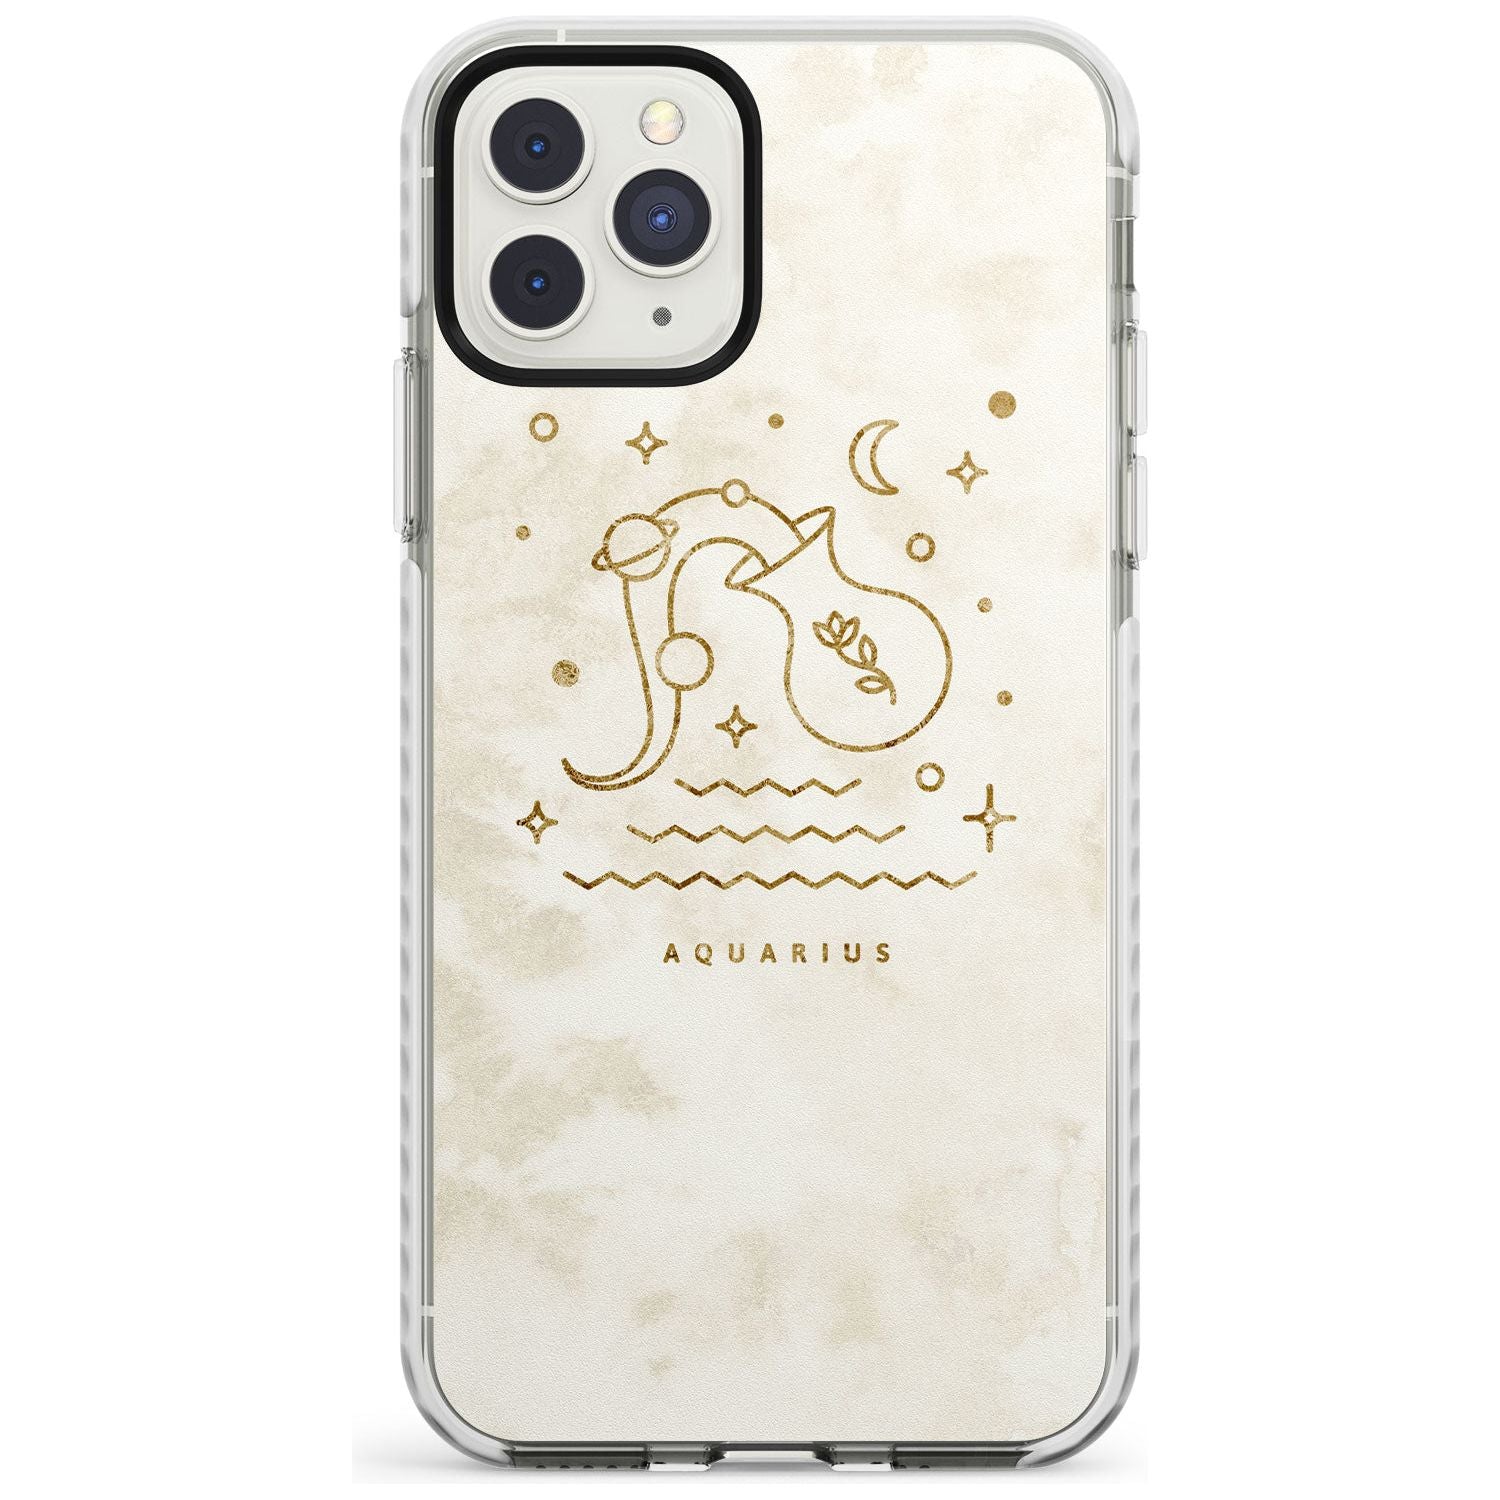 Aquarius Emblem - Solid Gold Marbled Design Impact Phone Case for iPhone 11 Pro Max